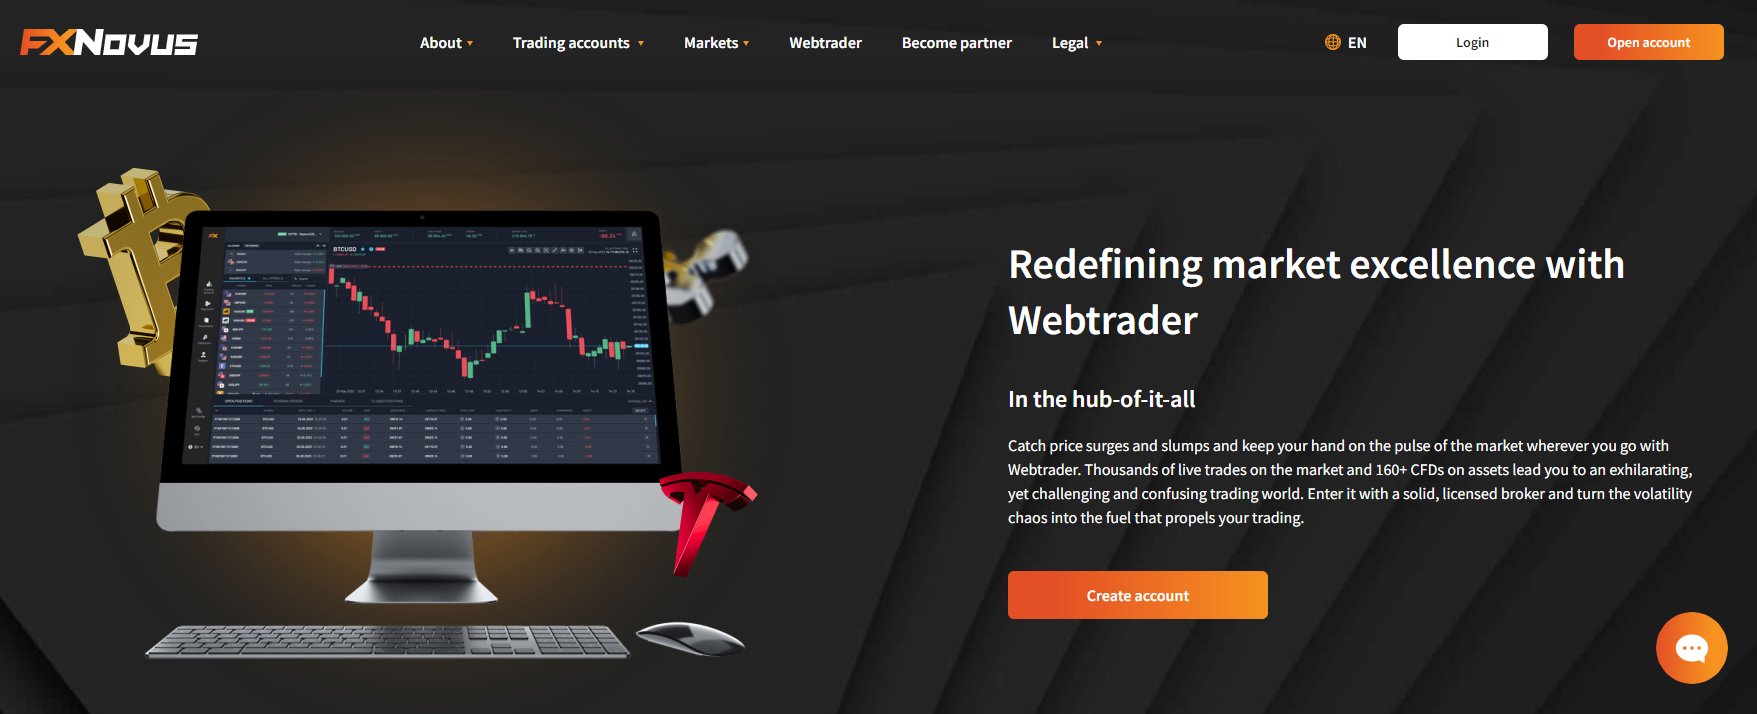 FXNovus WebTrader-Seite mit Diagrammen, Indikatoren und Handelswerkzeugen